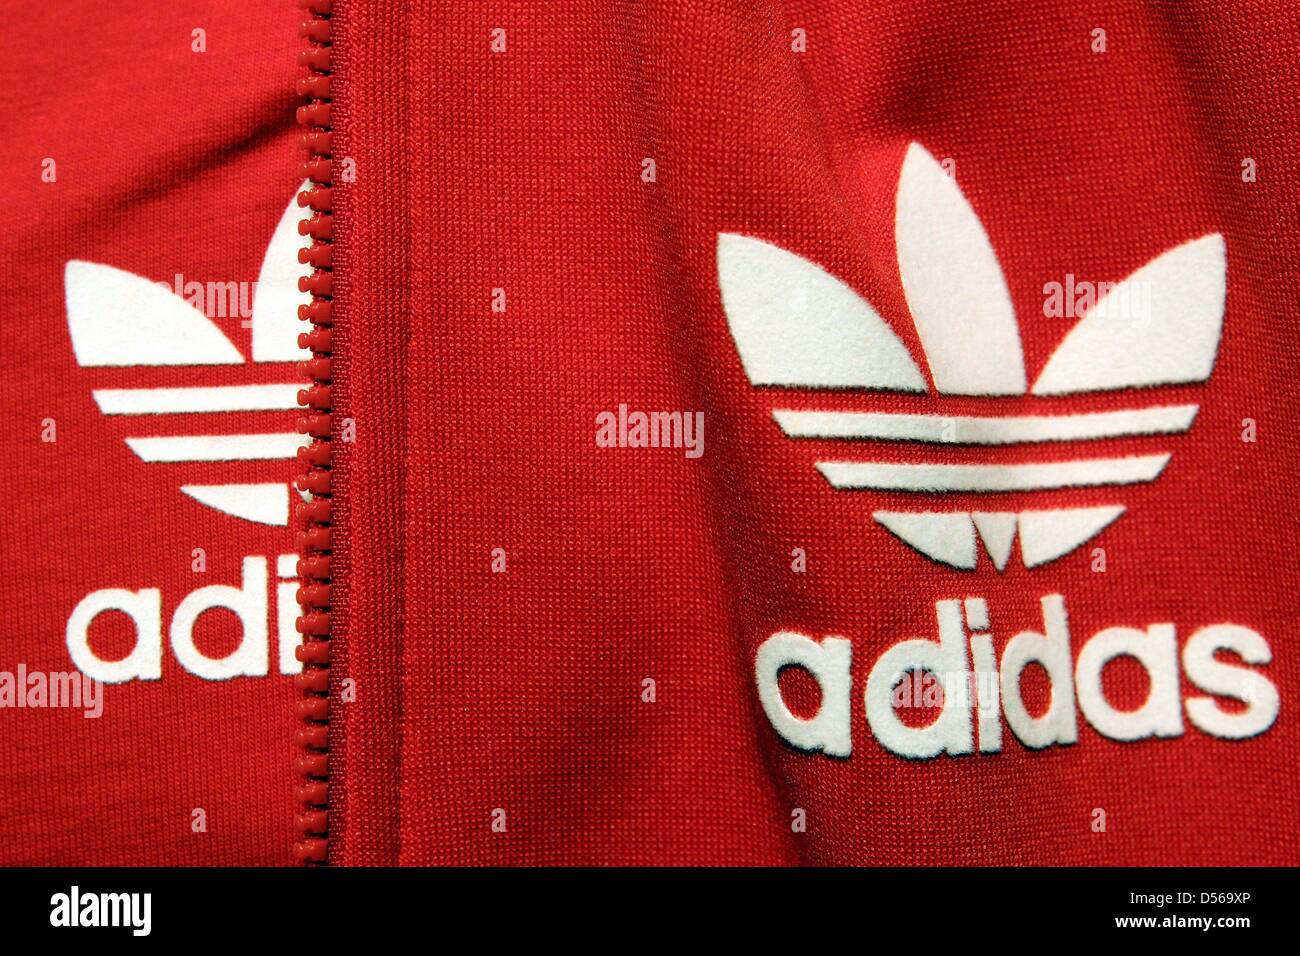 Dossier) - Un fichier photo datée du 06 mai 2010 comprend le logo du  fabricant d'équipement sportif 'Adidas', de l'Allemagne. Adidas veut  augmenter son chiffre d'affaires de 45 ou 50 pour cent